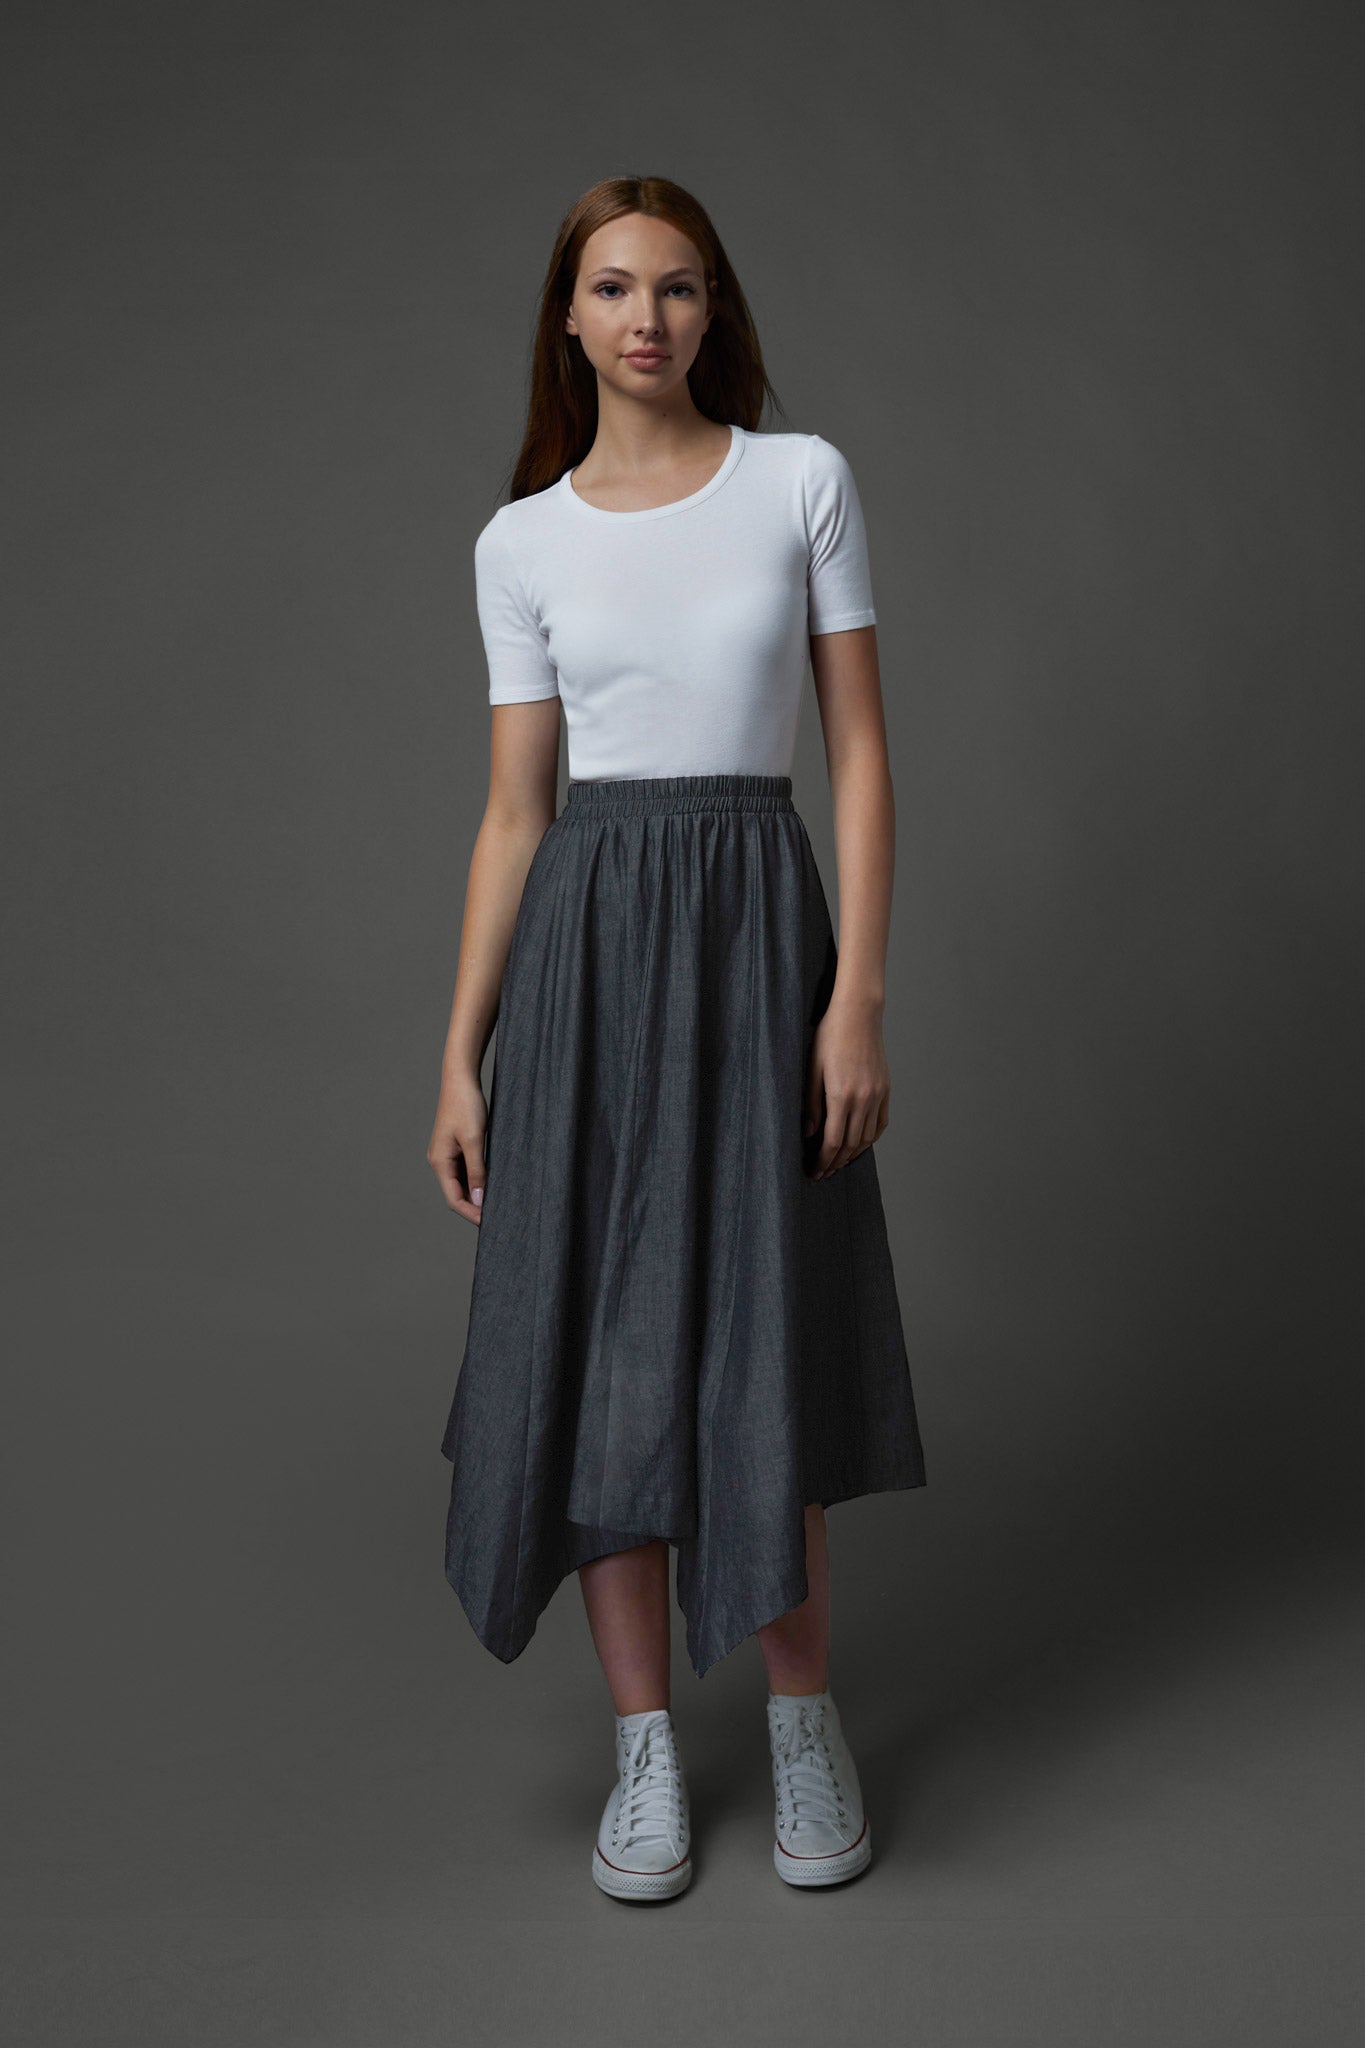 Kerchief Skirt in Denim #8106DG